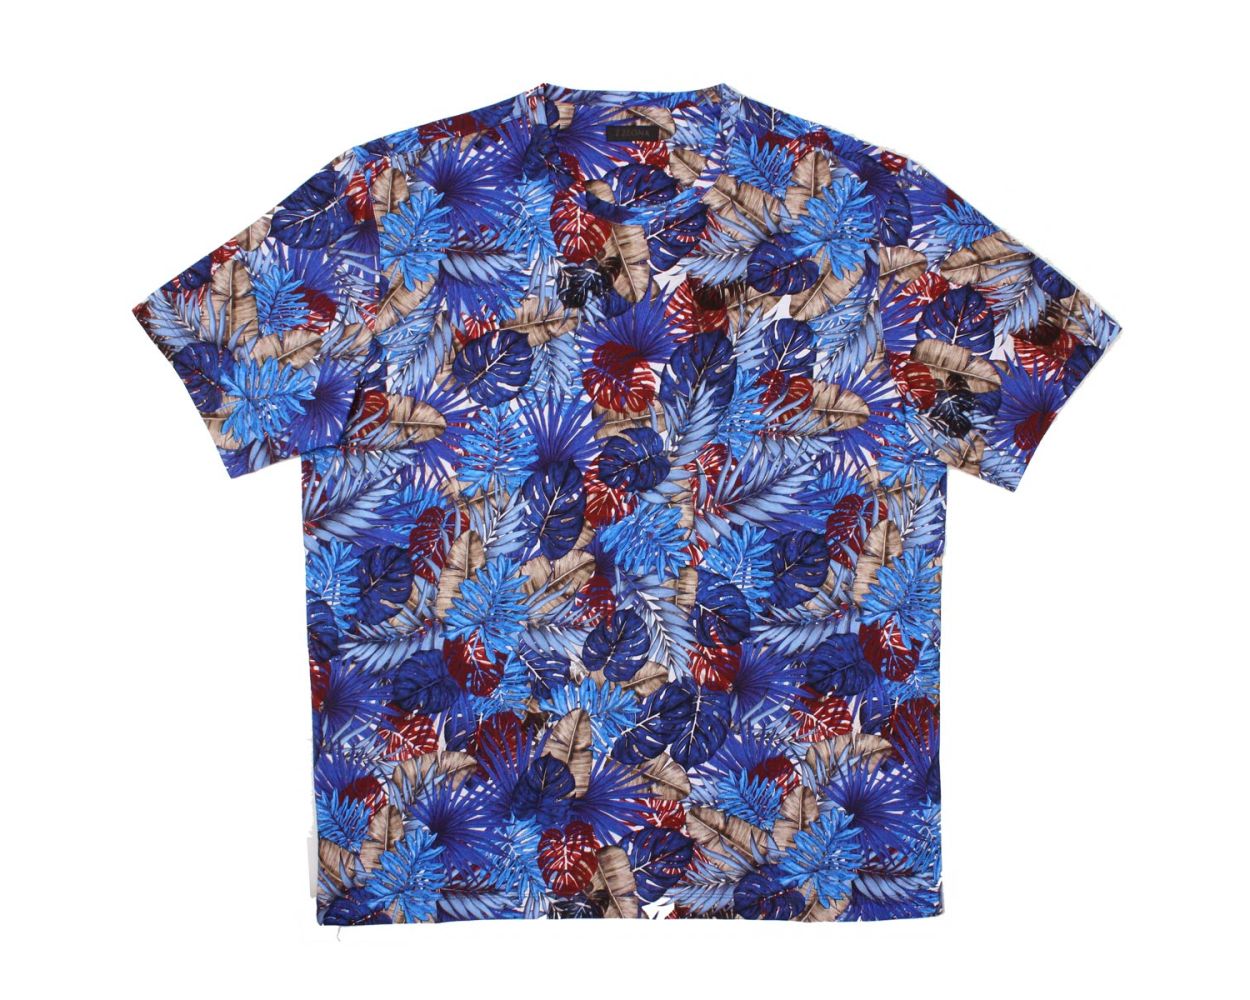 Floral Leaf Print Shirt & Short Set